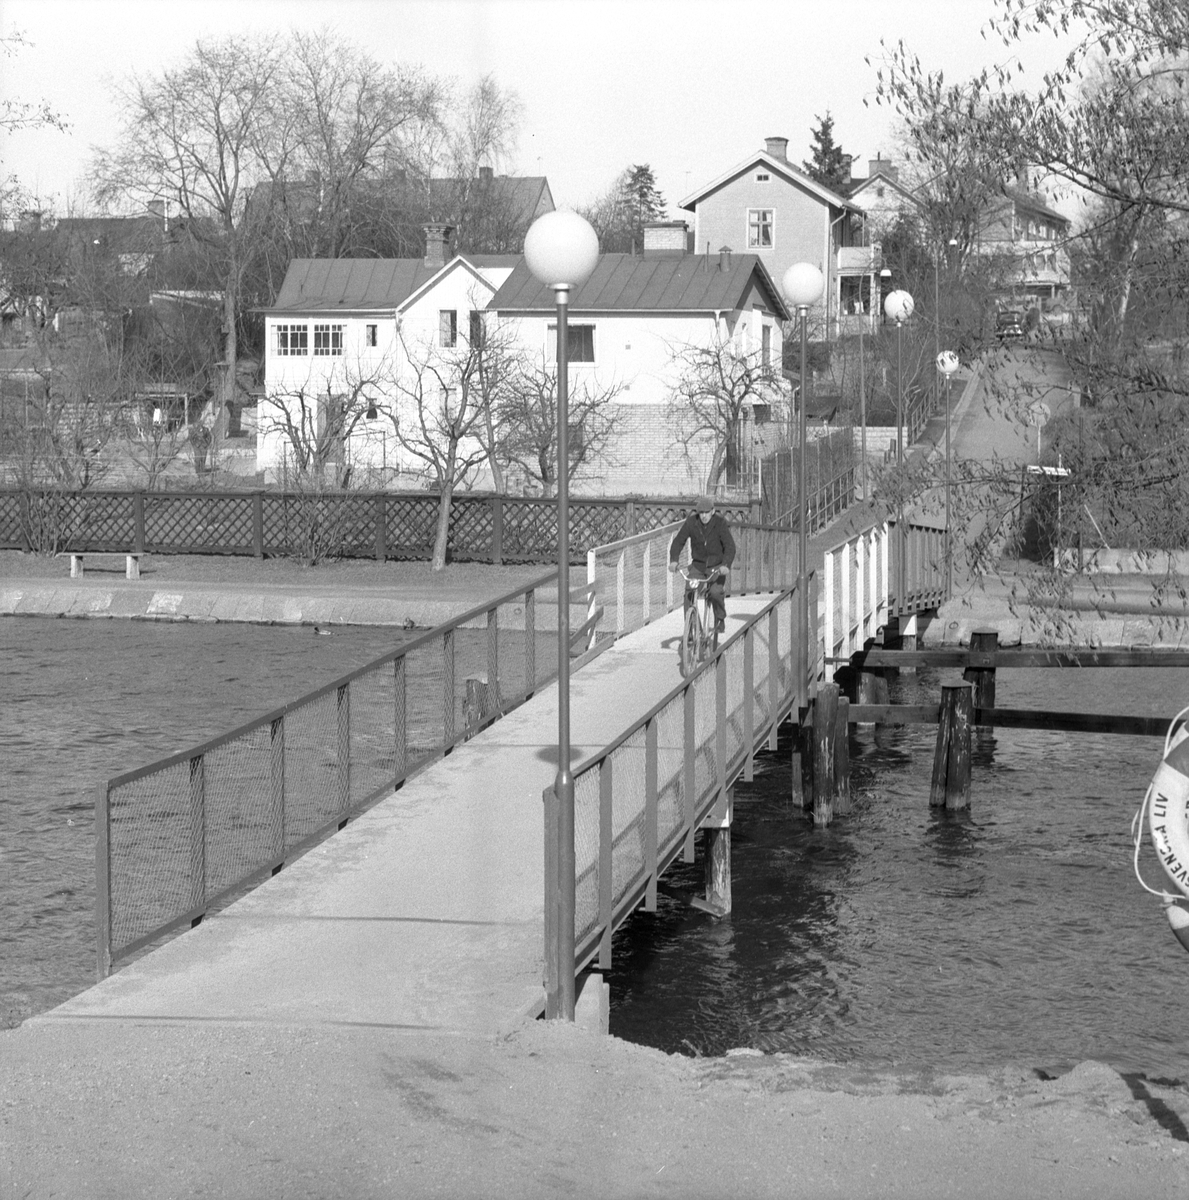 Runt årsskiftet 1960-61 ersattes den gamla pontonbron över Stångån / Kinda kanal med en ny i skinande aluminium. Pumpbron mellan Pumpgatan på tanneforssidan och Frejagatan i Hejdegården är sedan dess en tacksam och stabil överfart mellan stadsdelarna.